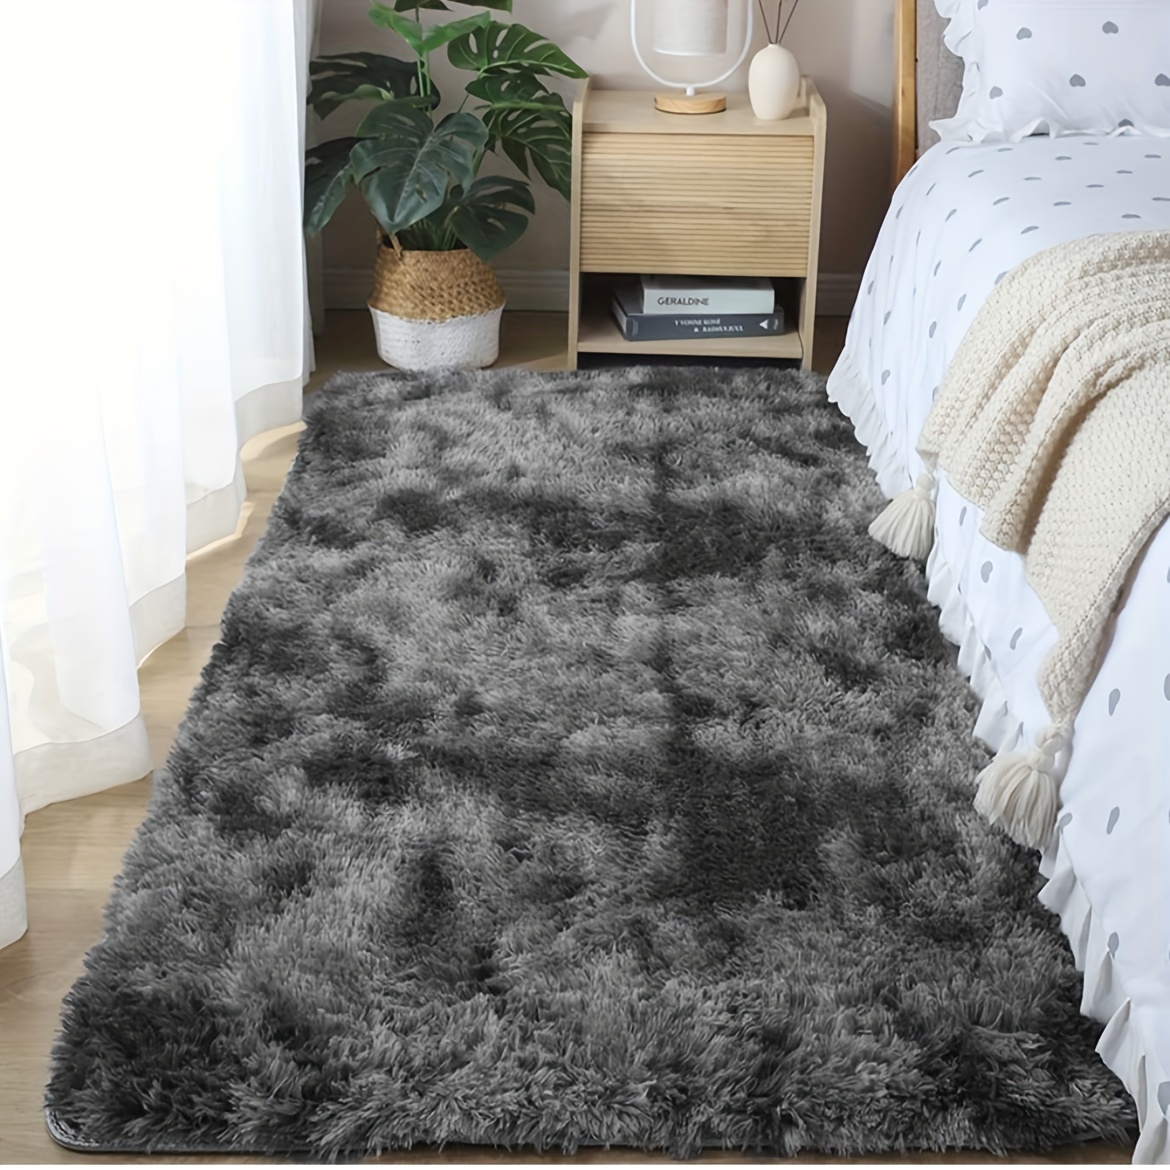 Comprar alfombras gris online, Gran selección